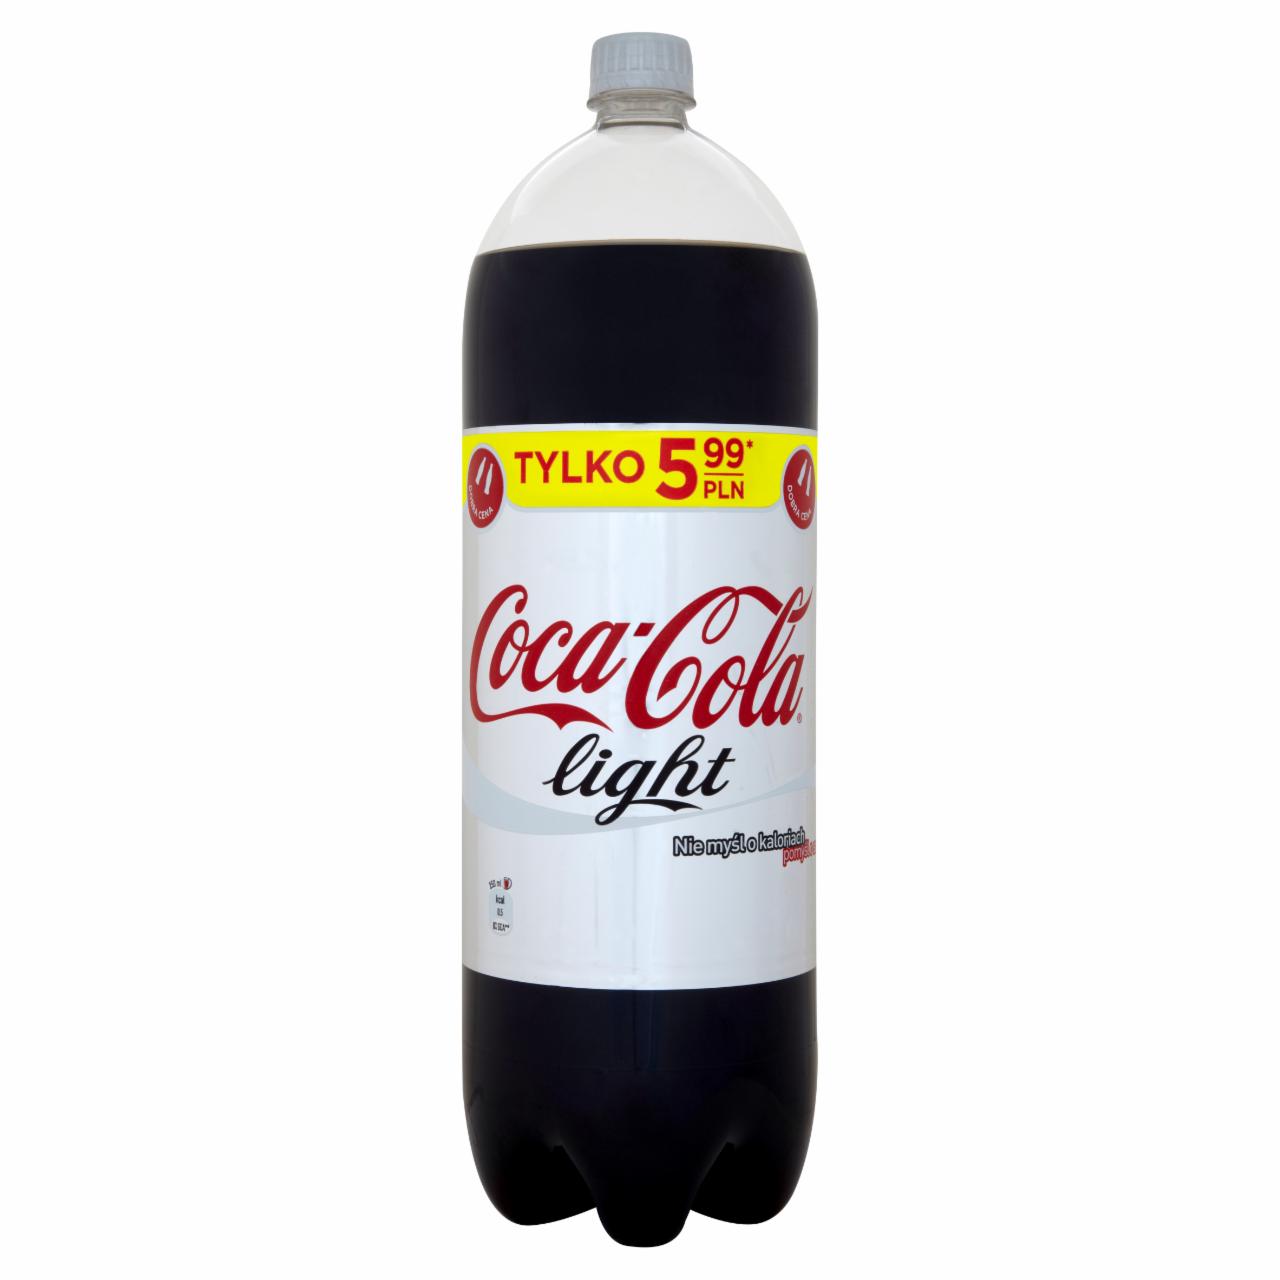 Zdjęcia - Coca-Cola light Napój gazowany 2,5 l